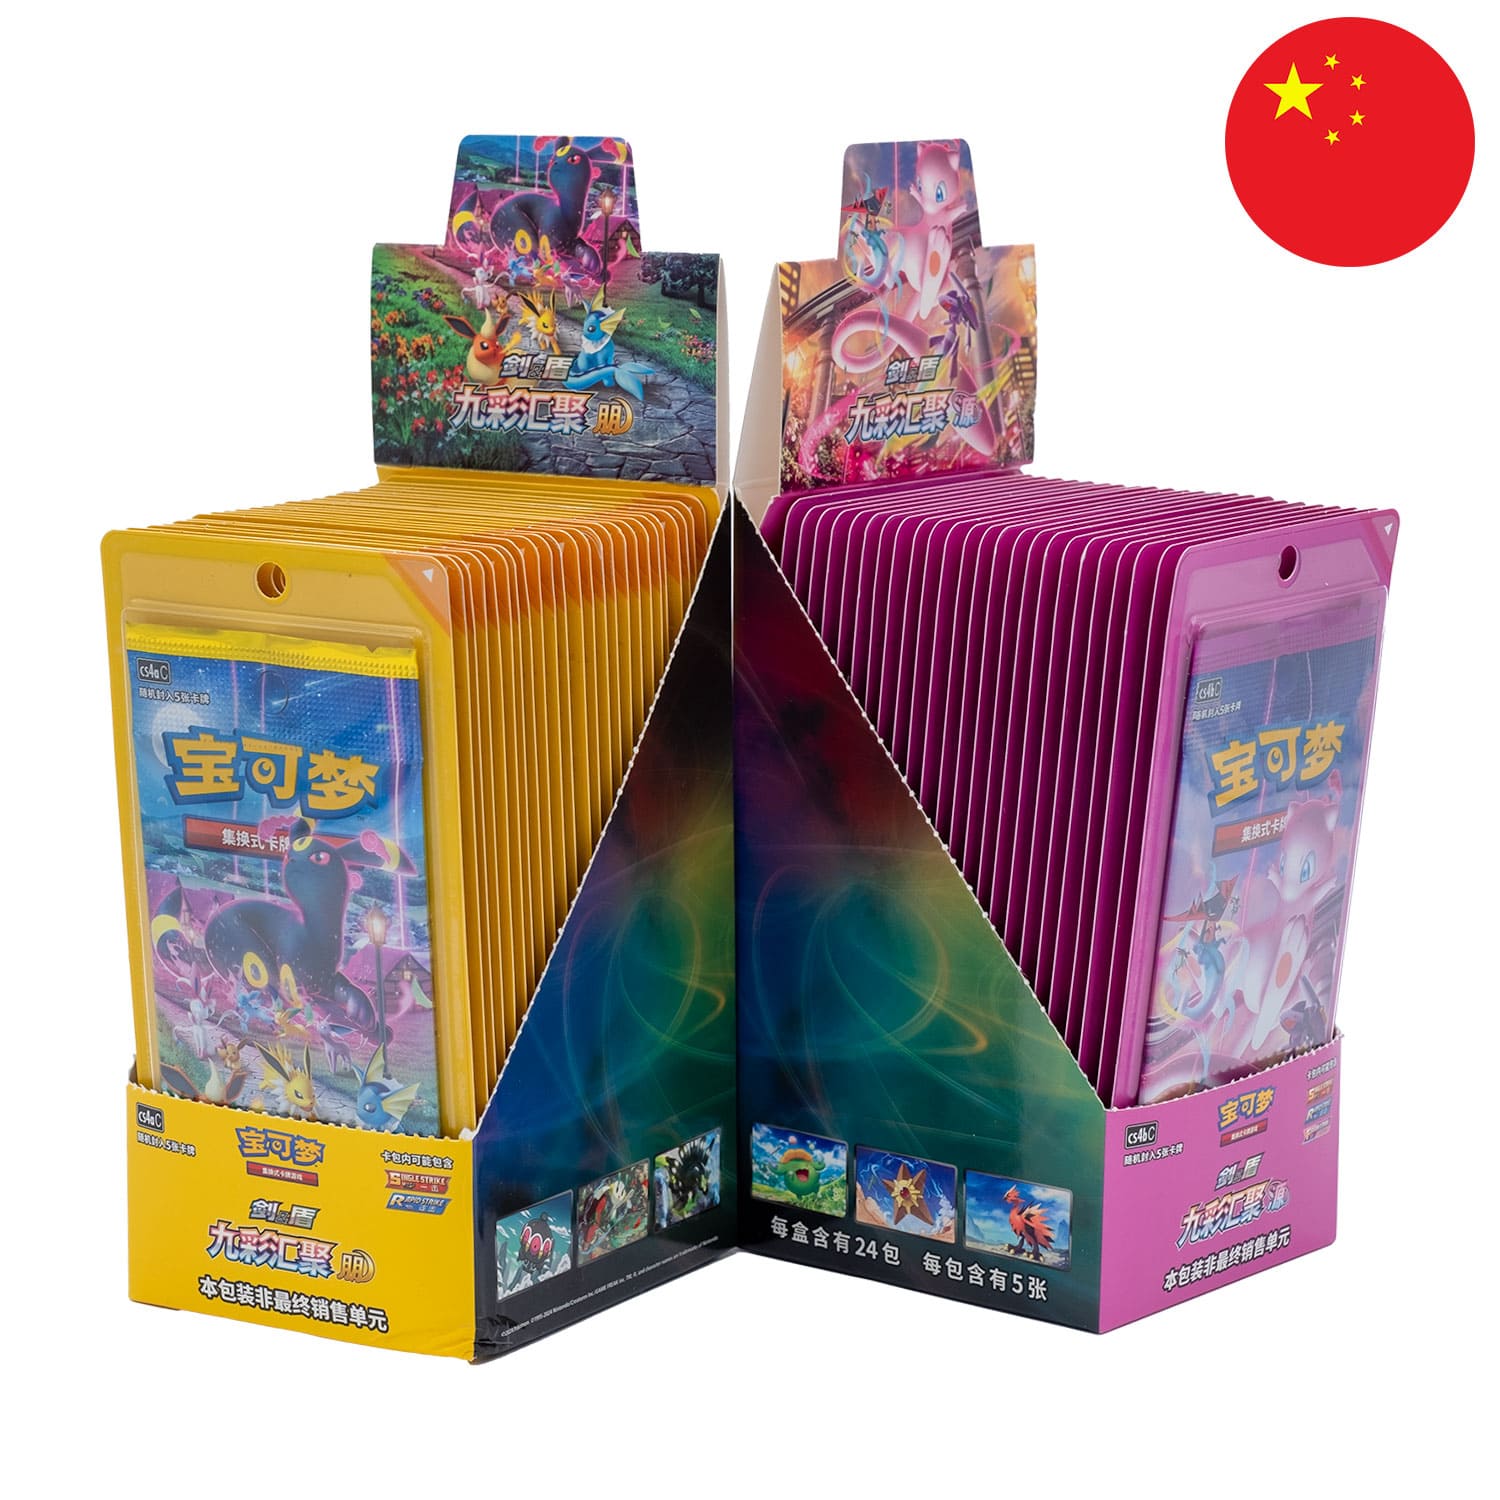 Die beiden Pokemon Display Nine Colors Gathering: Friend&Origin, geöffnet&nebeneinander, mit der Flagge Chinas in der Ecke.